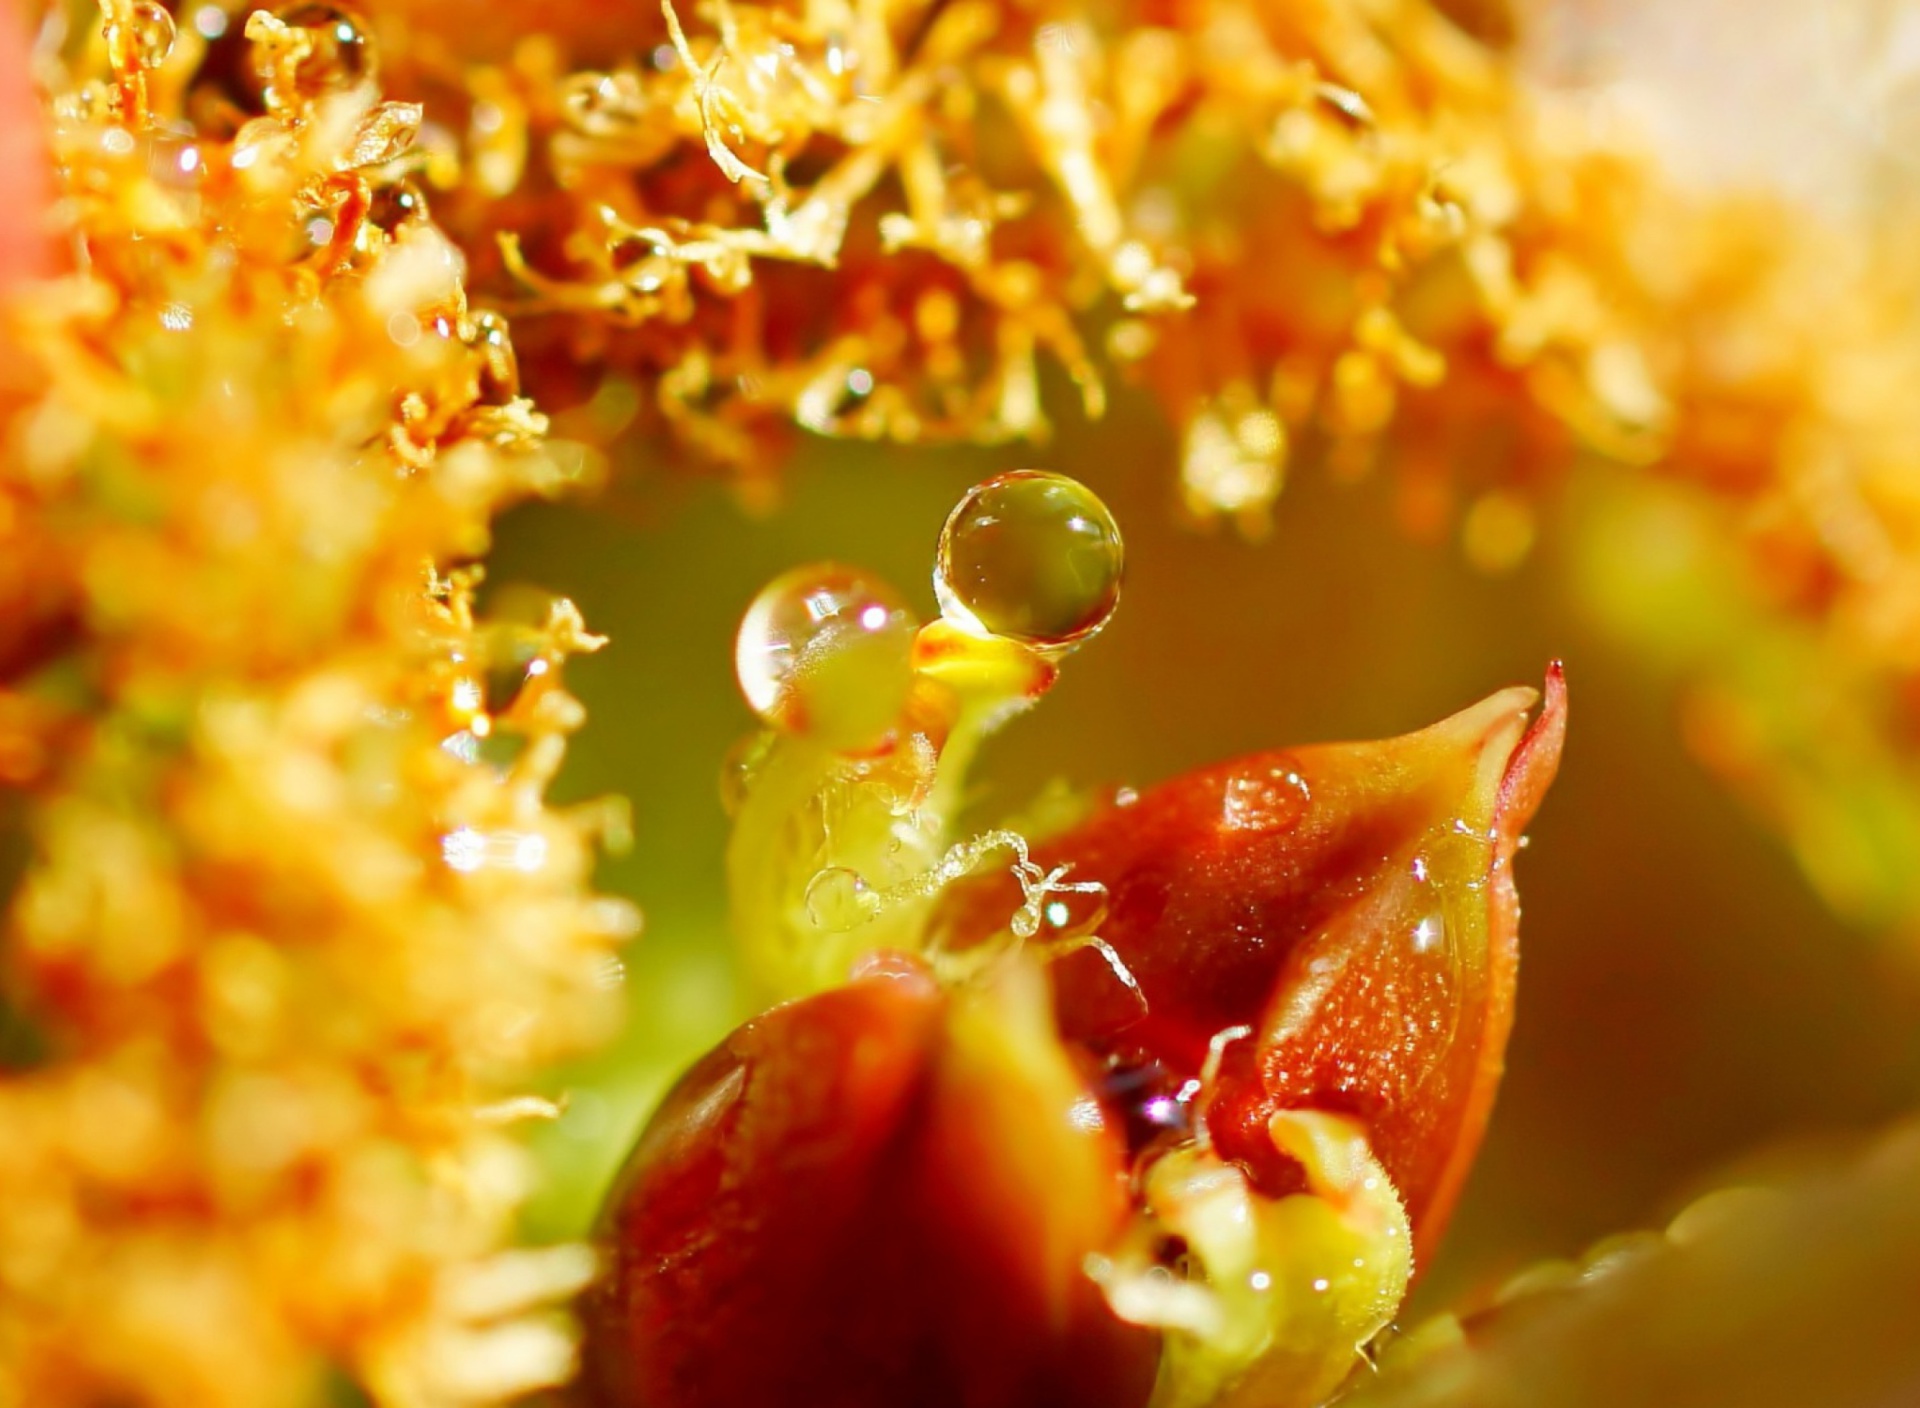 Sfondi Flower with Drops 1920x1408